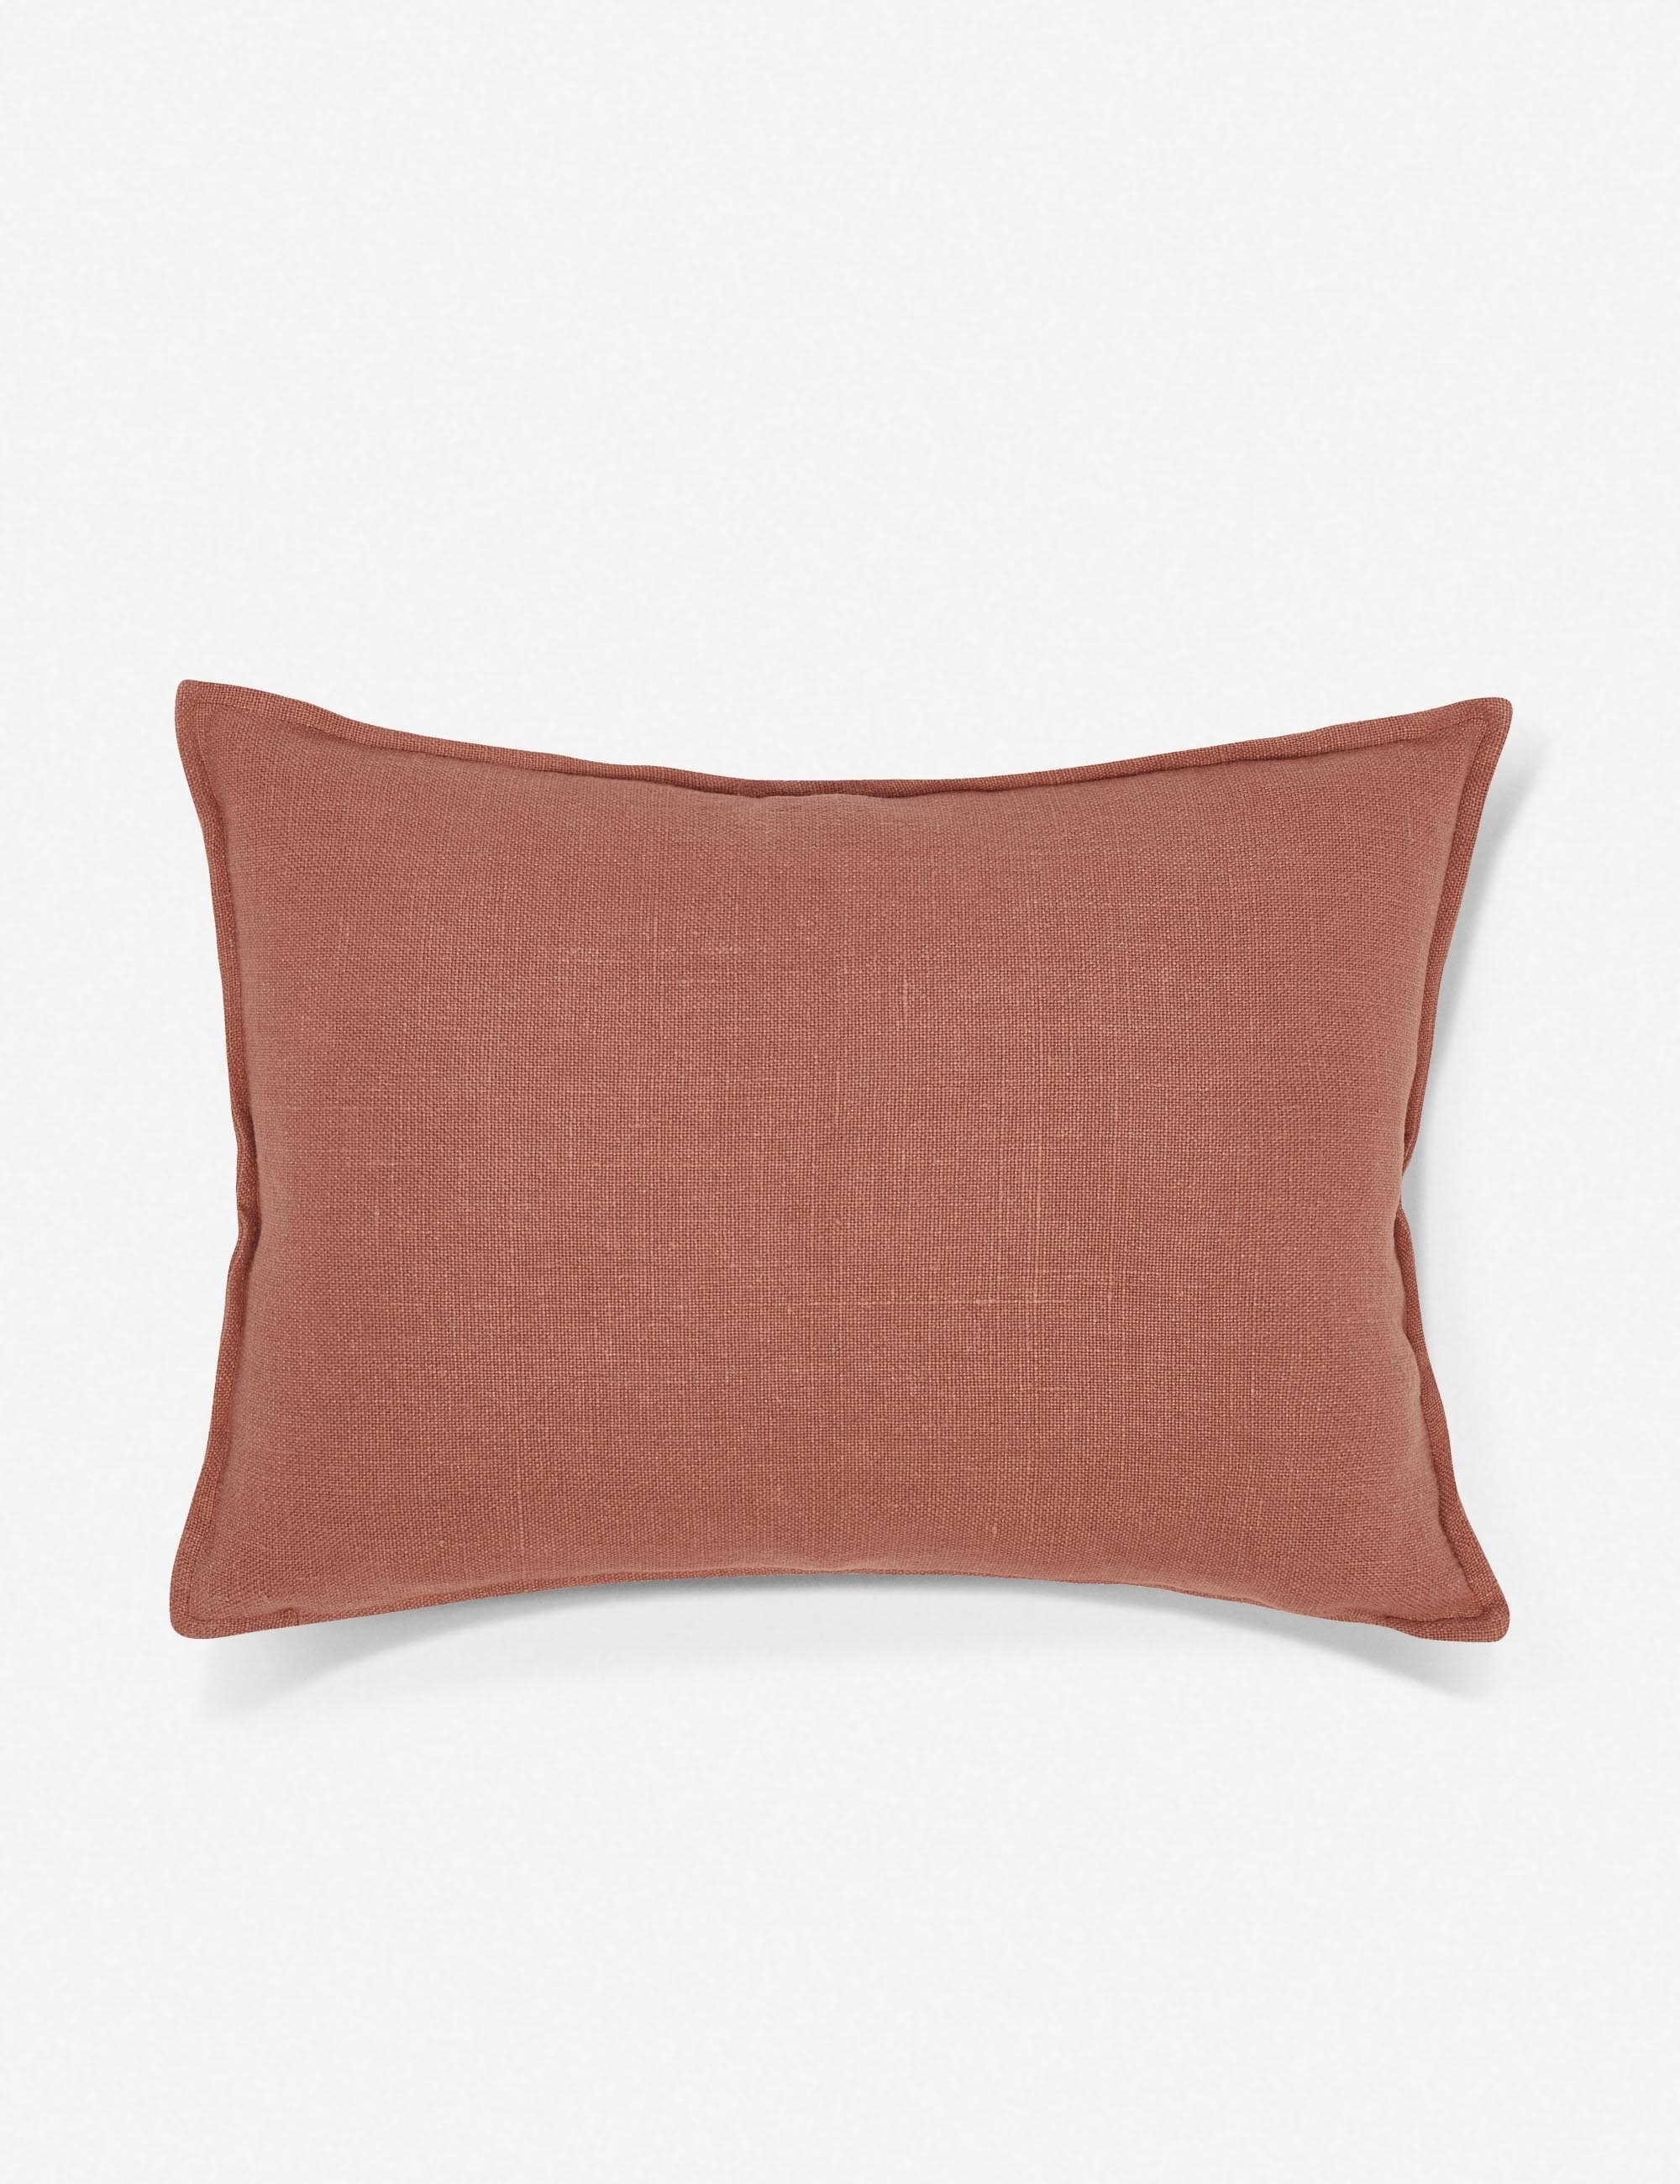 Kiran Linen Lumbar Pillow, Terra Cotta - Image 0